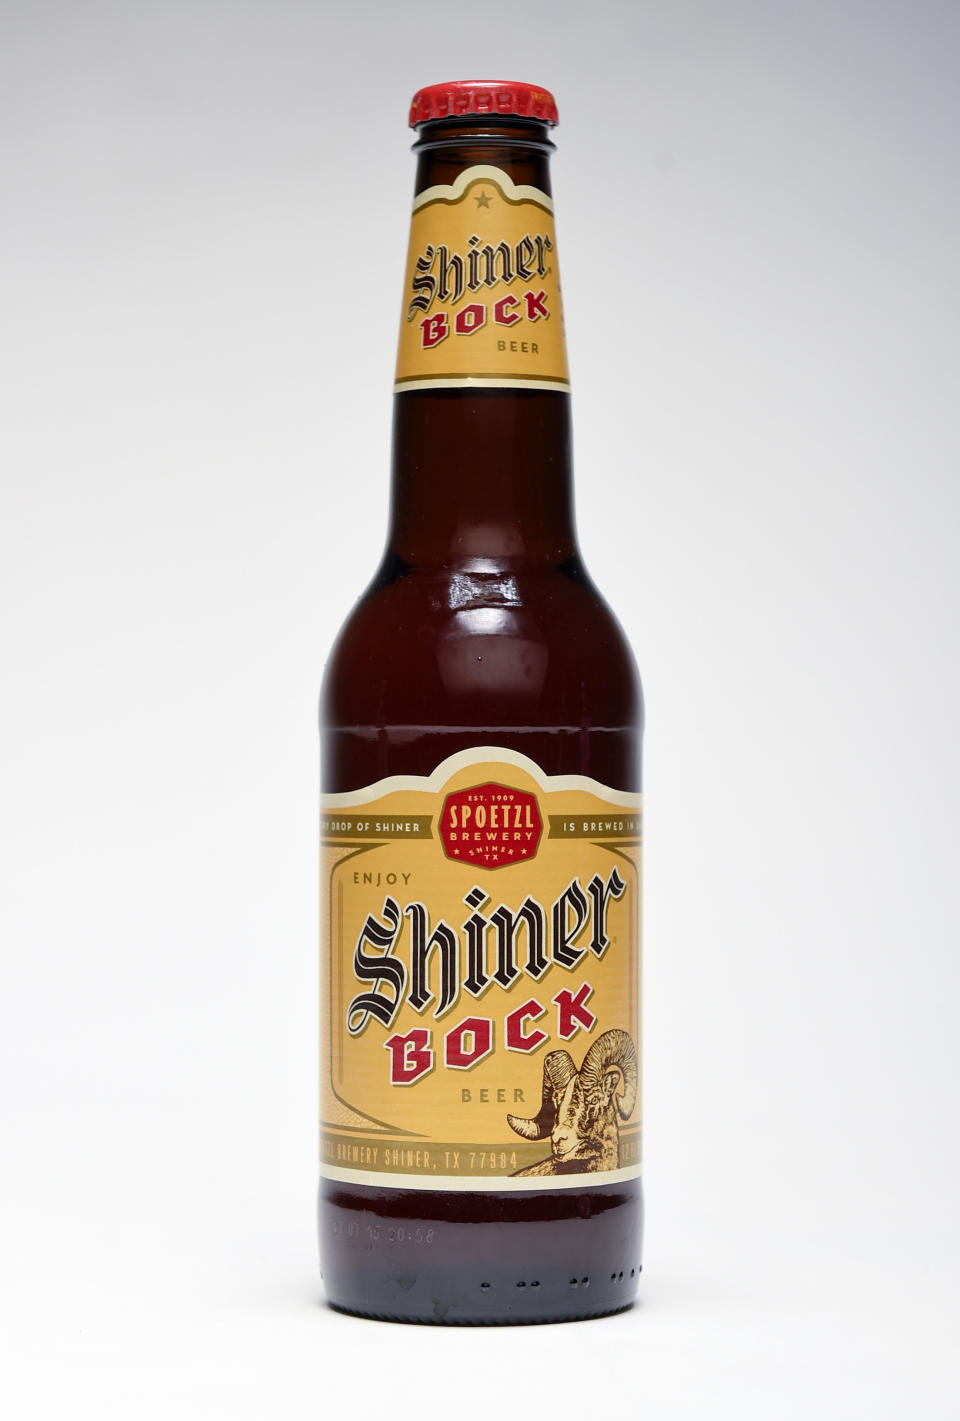 A bottle of Shiner beer